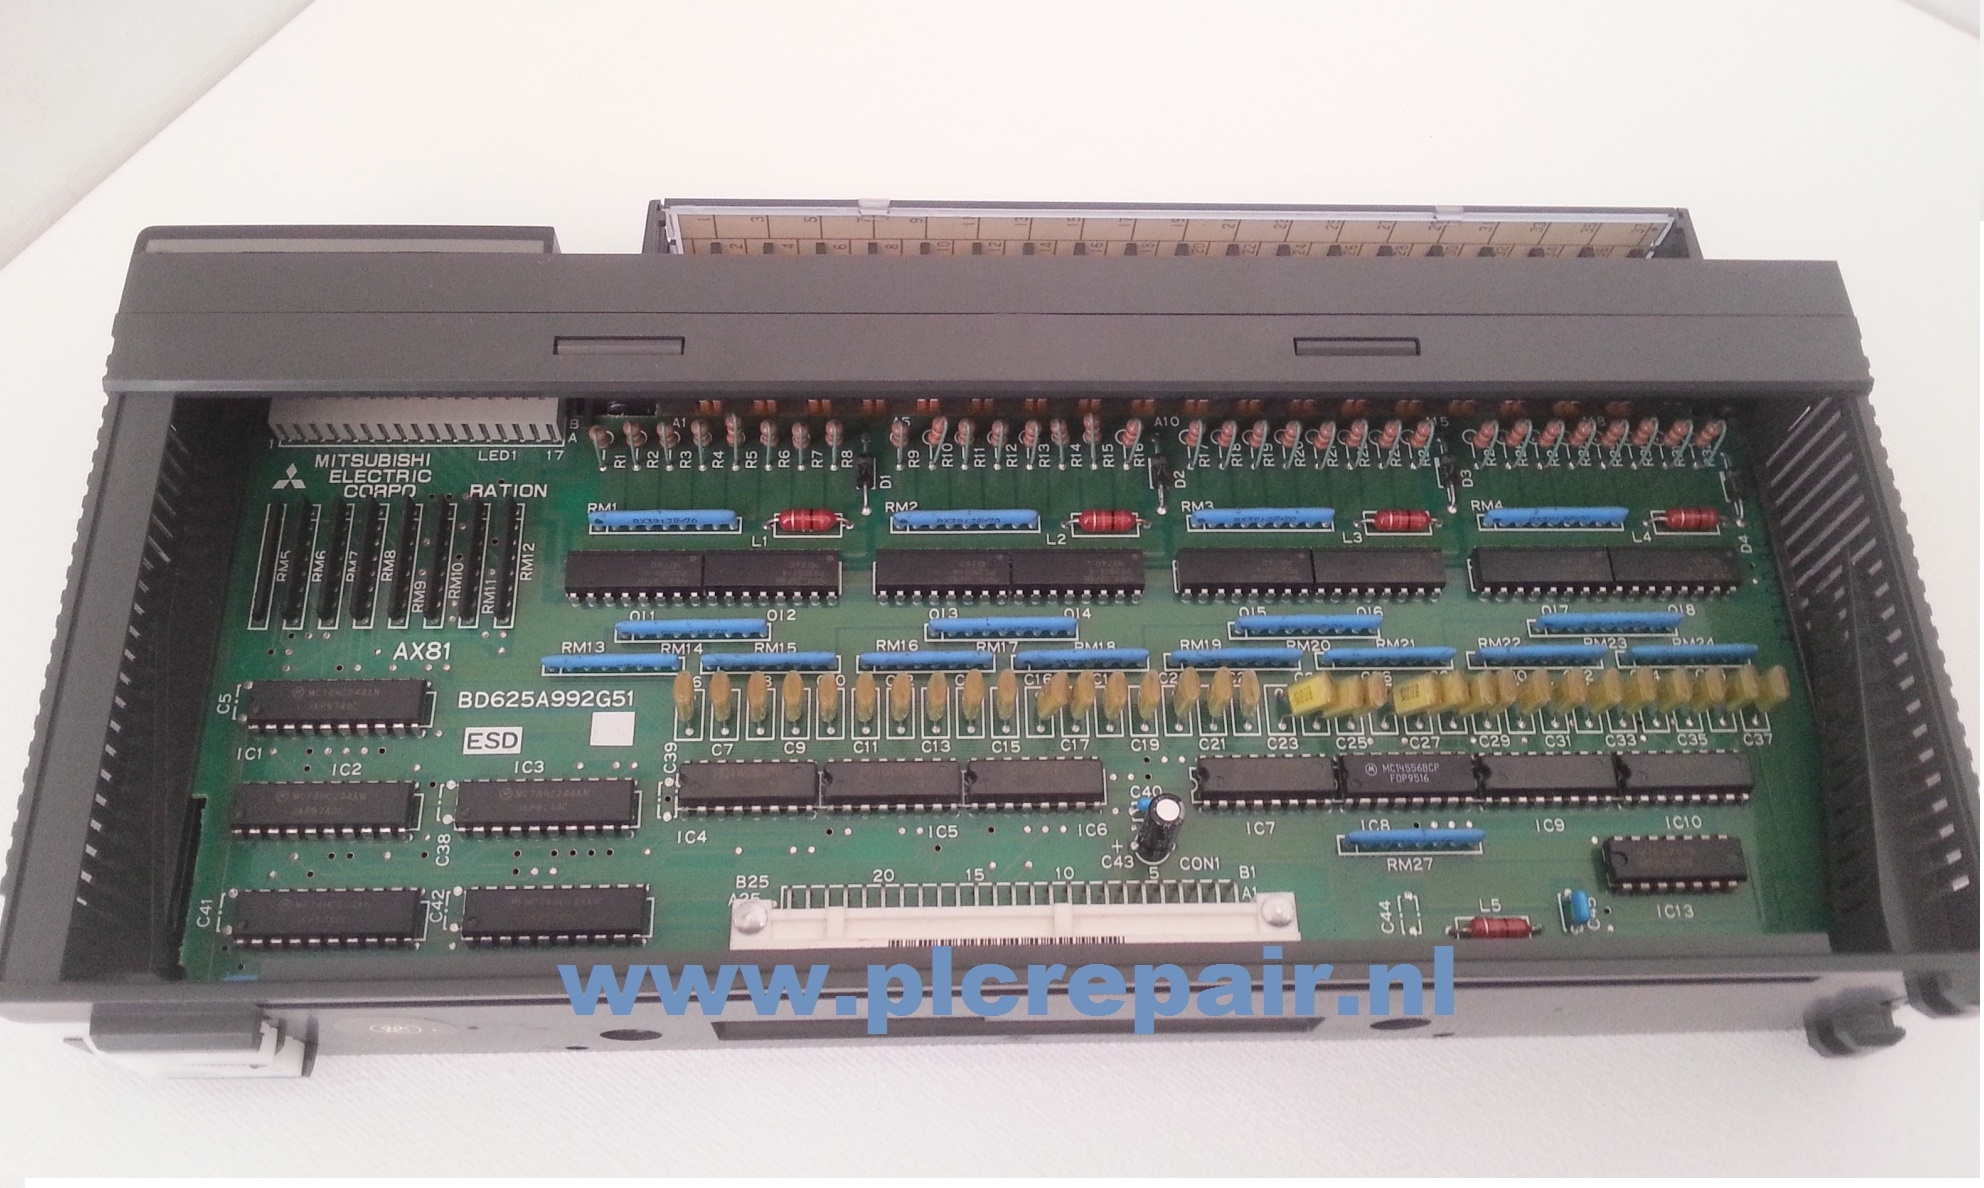 AX81 melsec mitsubishi plc input cards